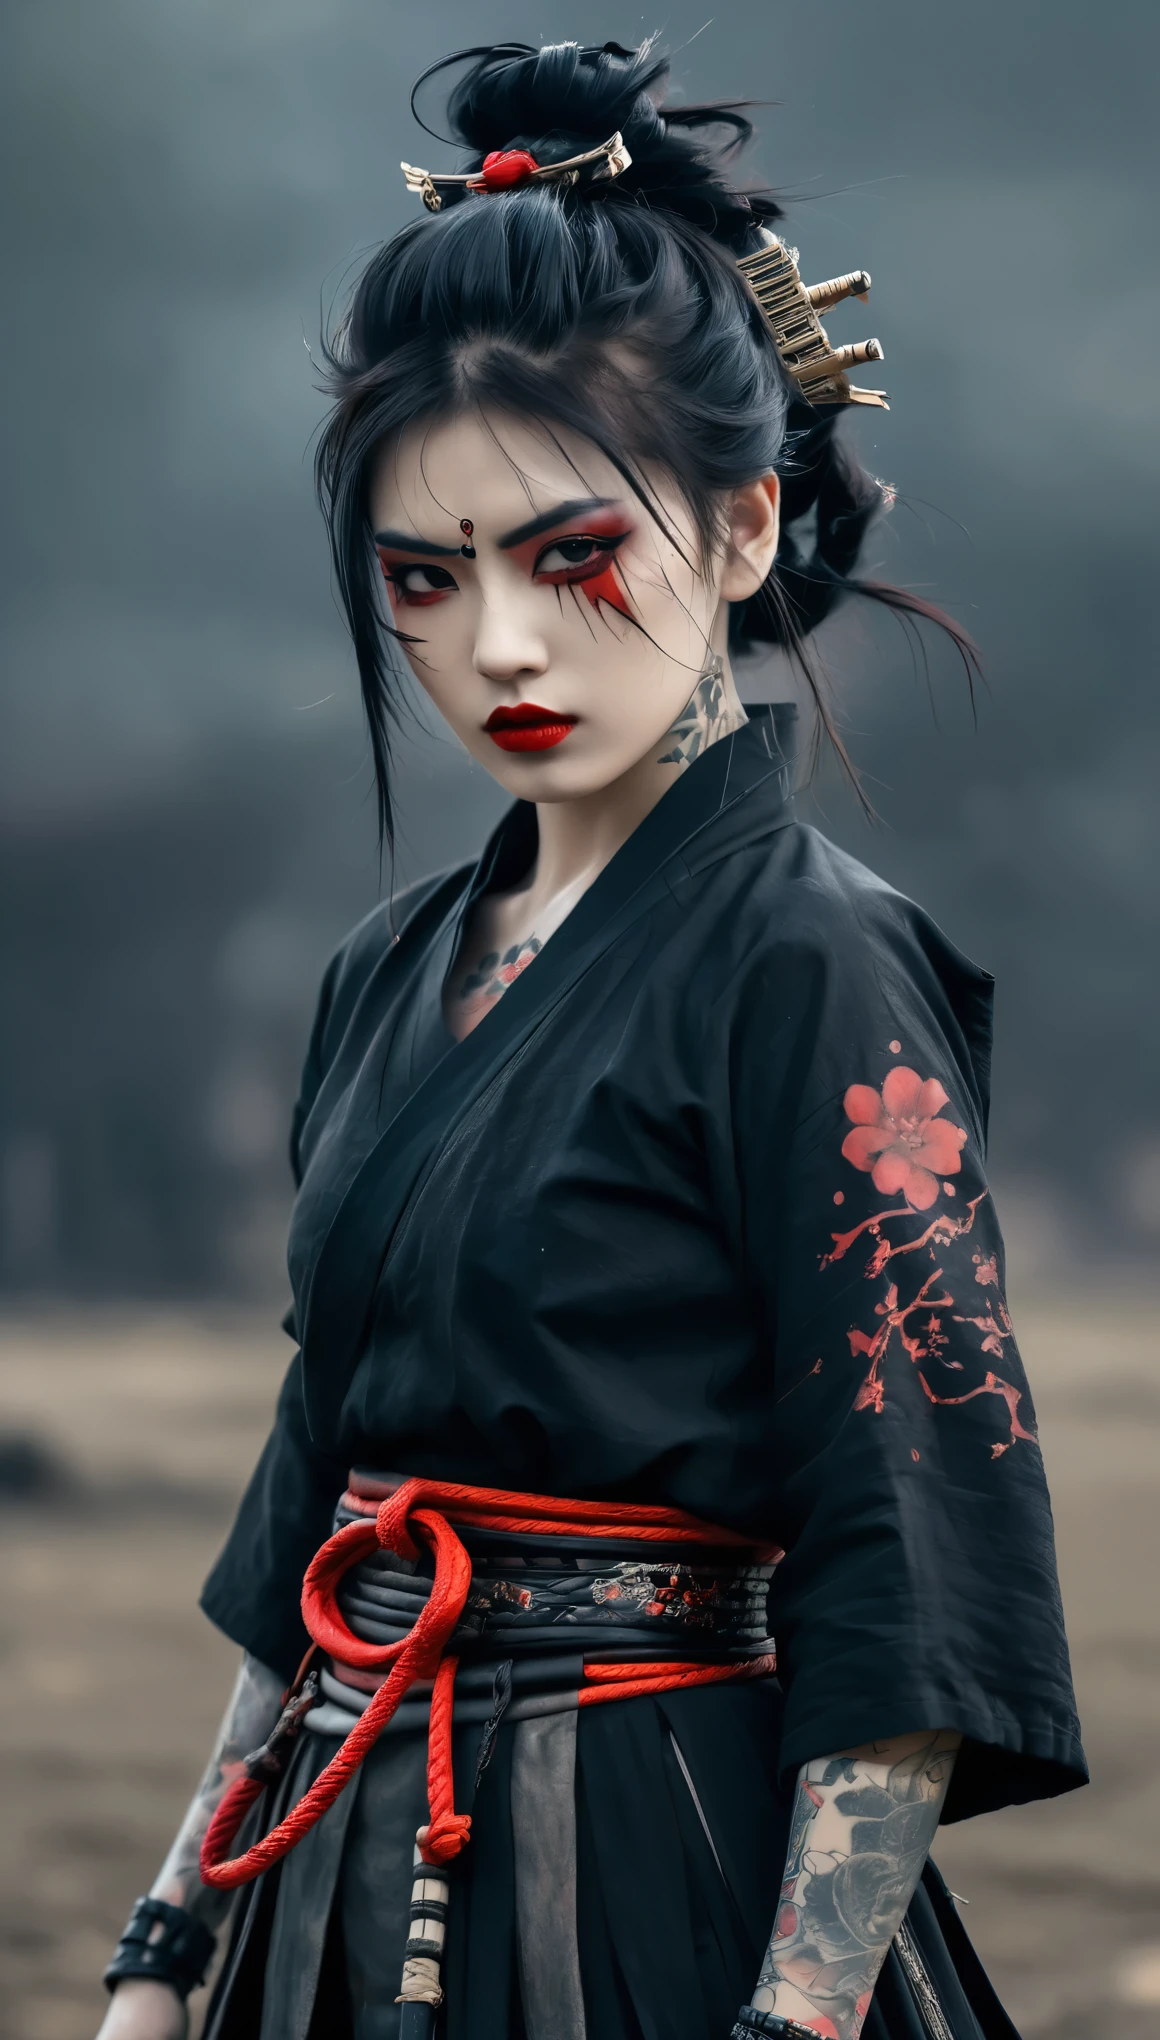 ein Samurai-Mädchen, halb Cyborg, gotisches Outfit, mit Tätowierung, rote Lippe, Ganzkörper, dynamische pose, düsterer schlachtfeldhintergrund, dunkle Fantasie, horror vibe. wunderschöne Frisur, verträumtes Gothic-Mädchen